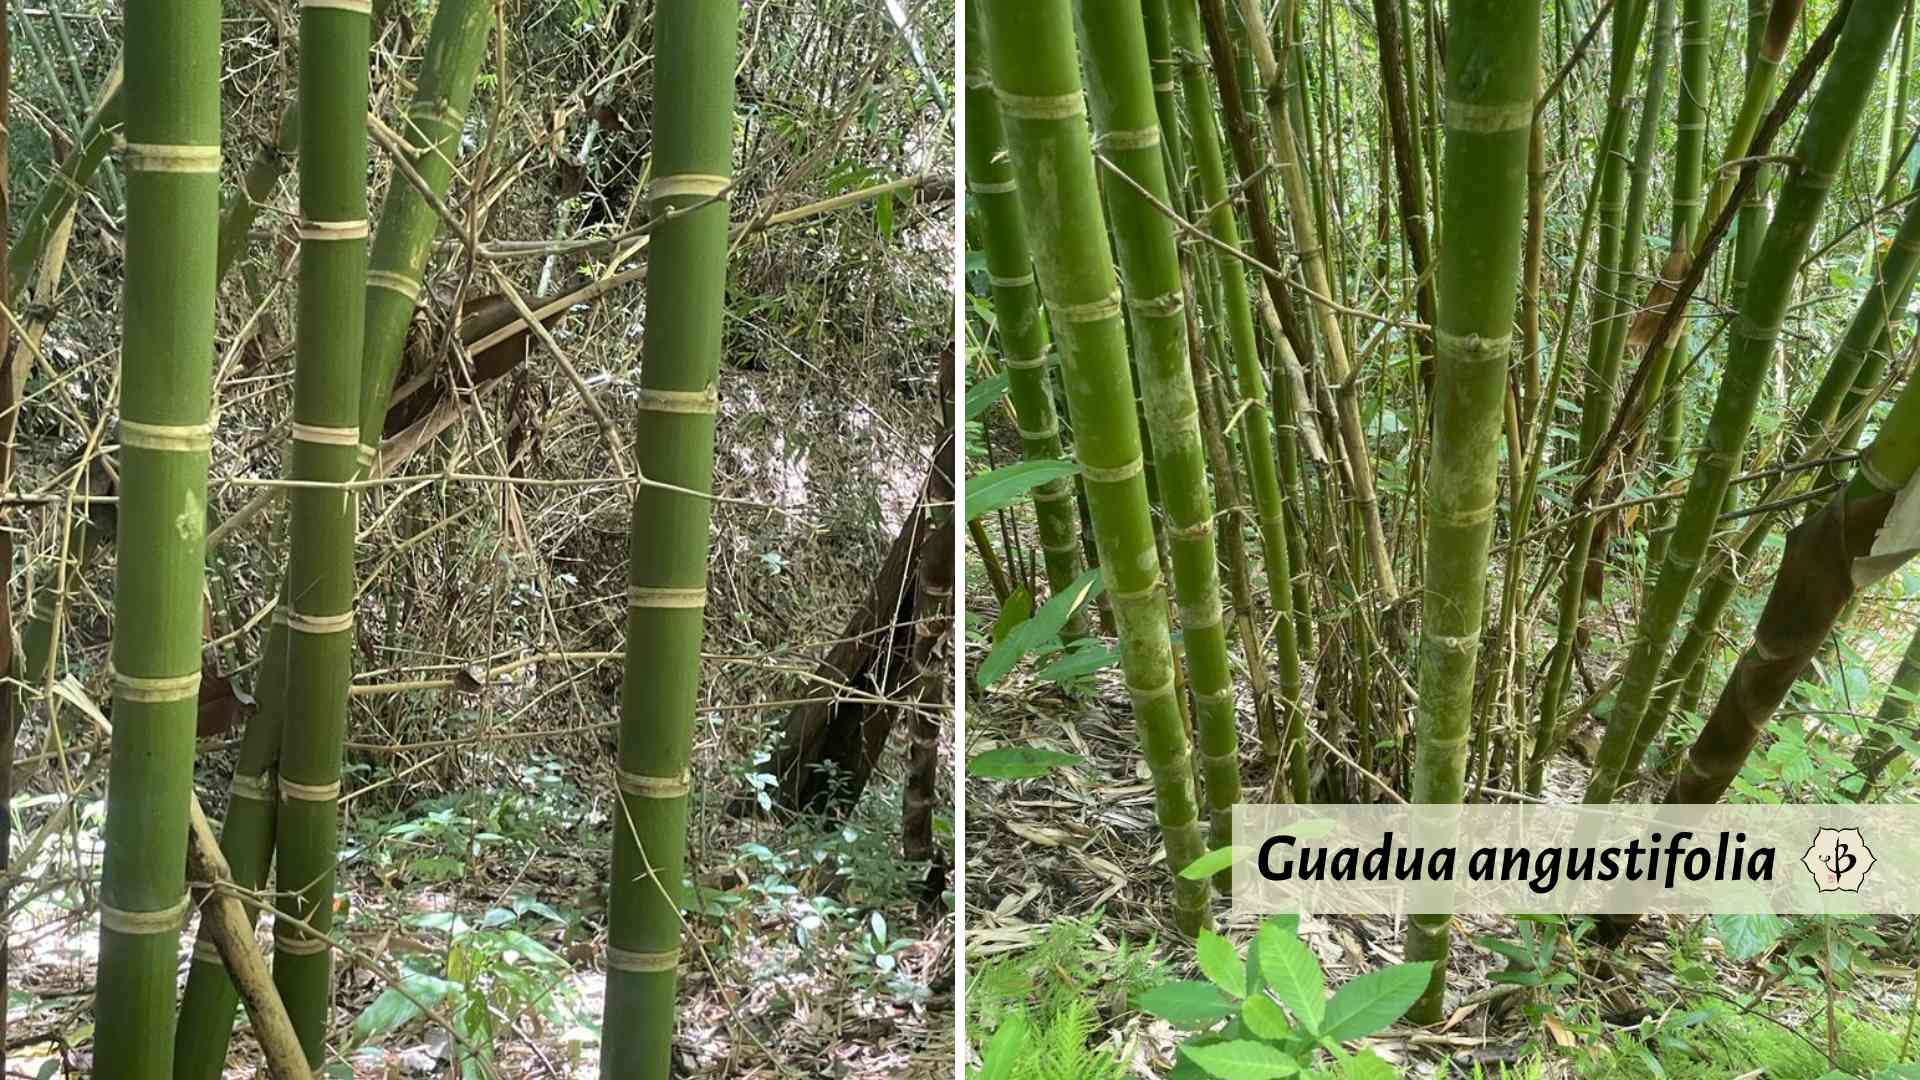 Guadua angustifolia in Costa Rica